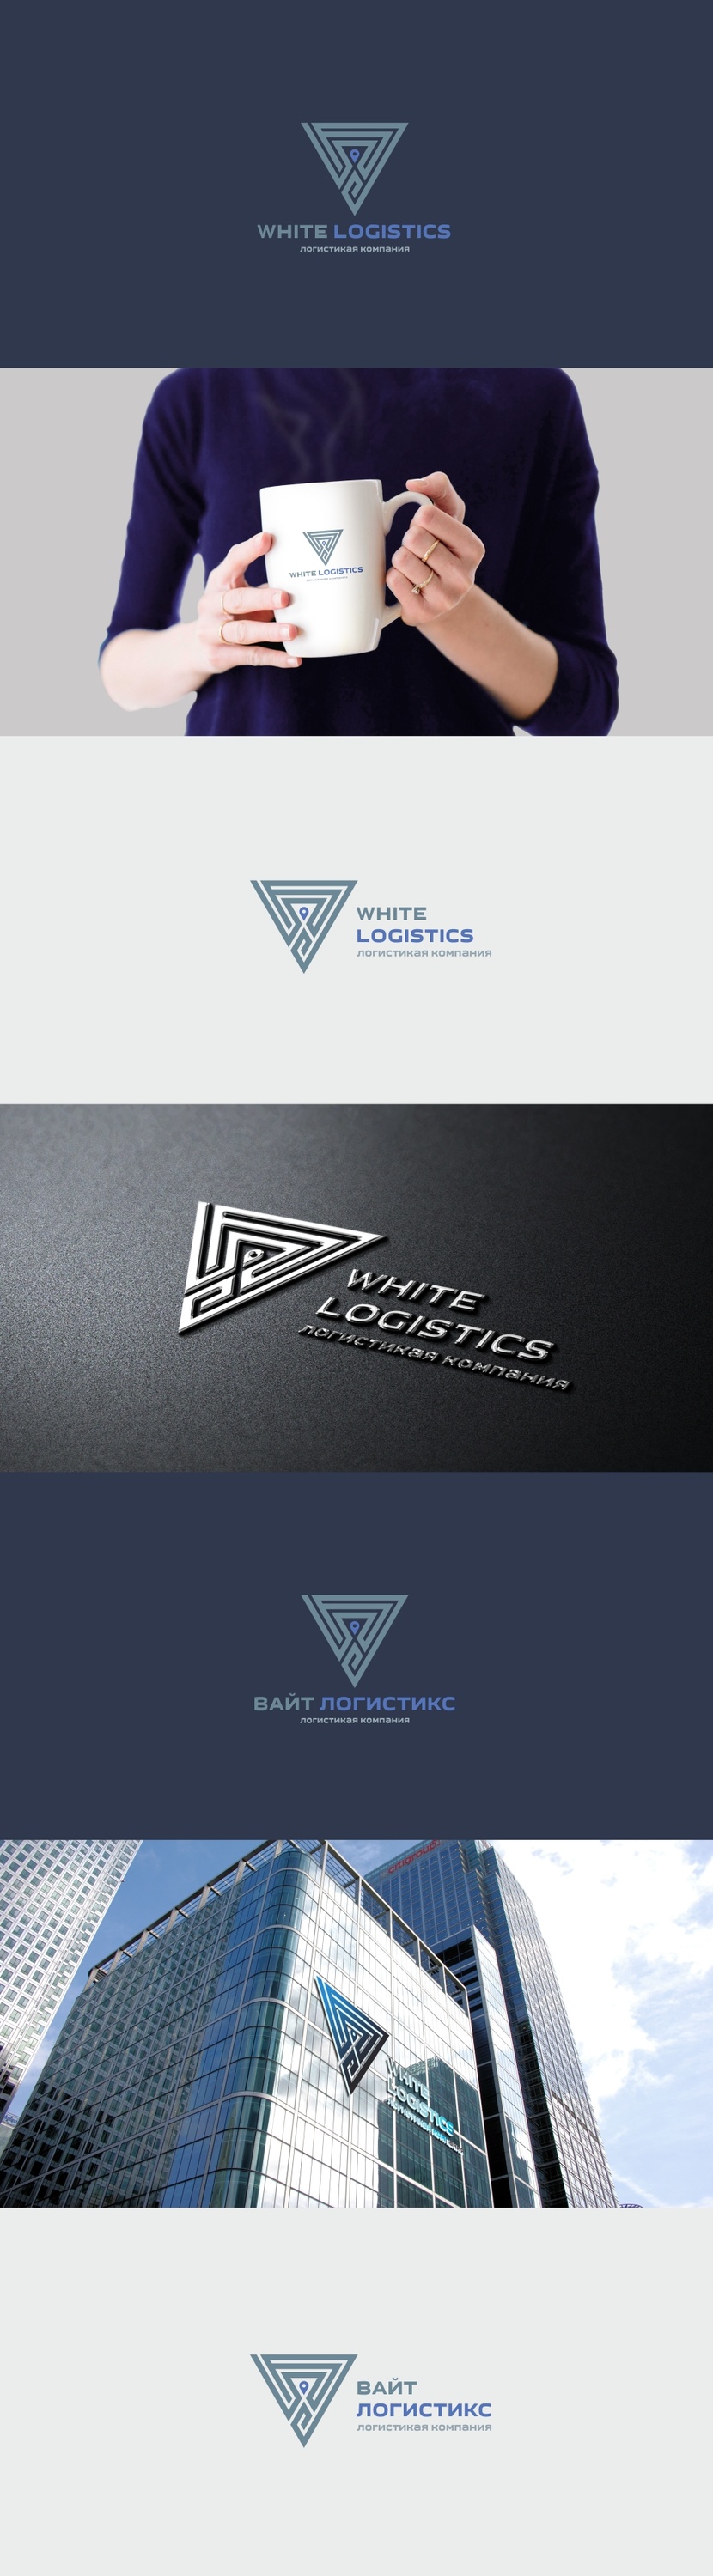 Логотип и фирменный стиль для логистической компании  -  автор Андрей Мартынович